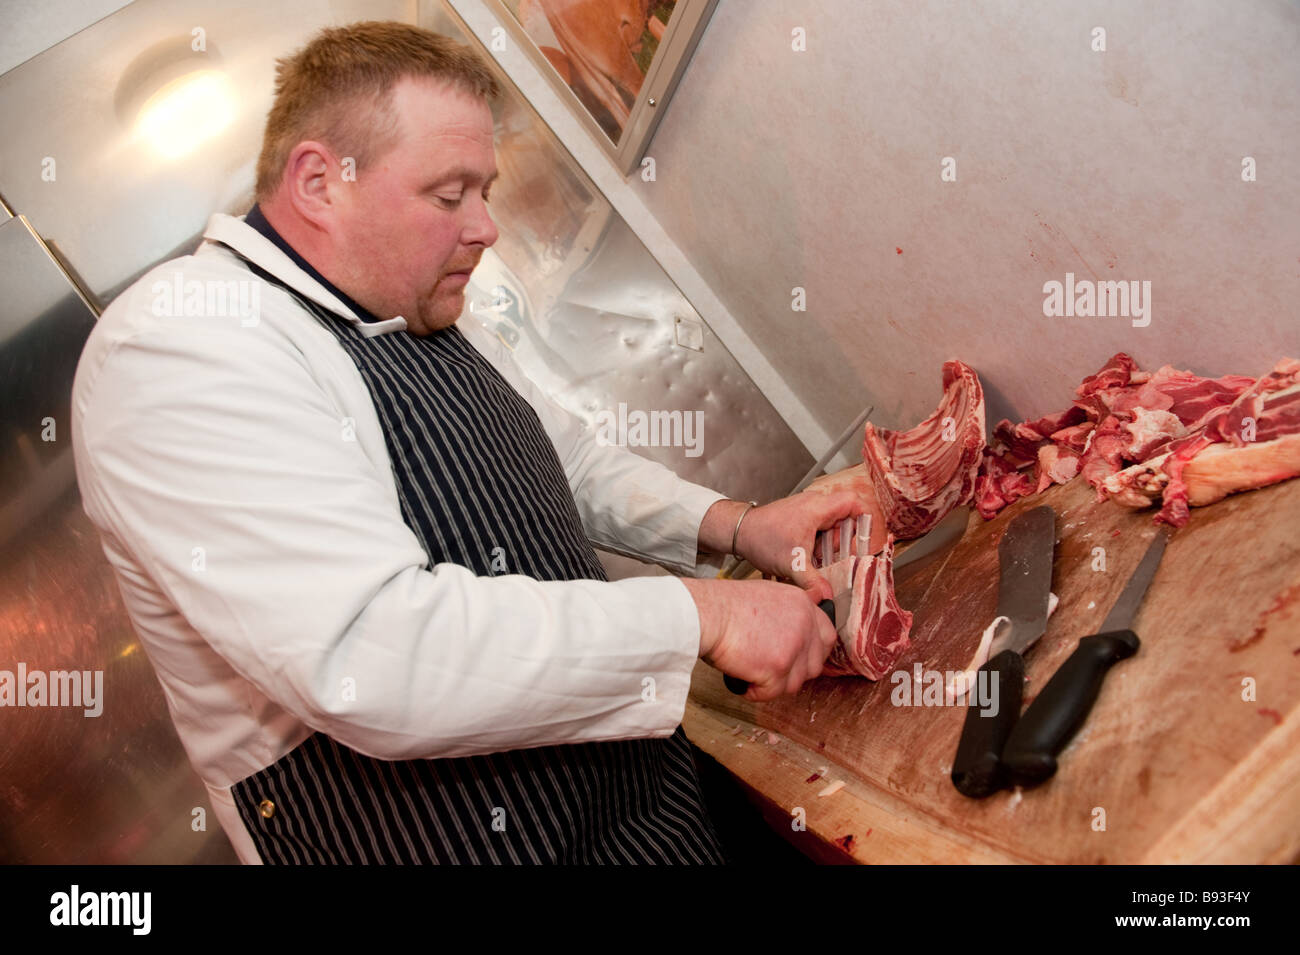 Rob Rattray premiata macelleria gallese preparare freschi locali costolette di agnello nel suo negozio Aberystwyth Wales UK Foto Stock